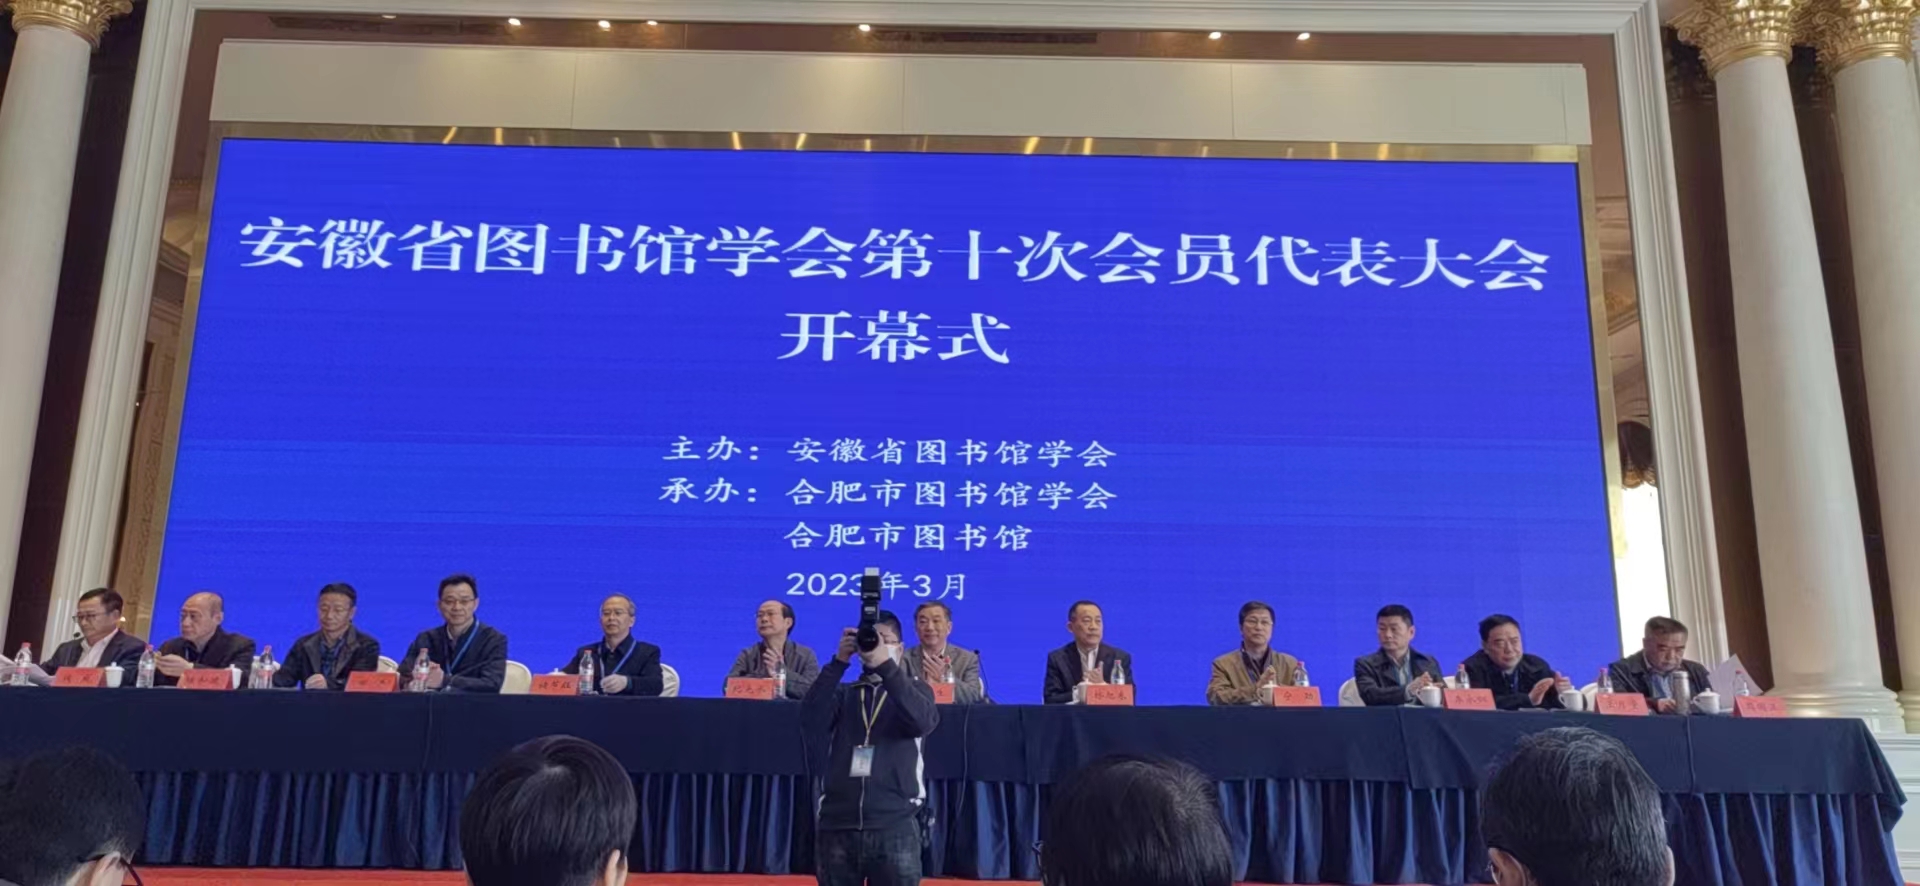 安庆市图书馆当选安徽省图书馆学会副理事长单位